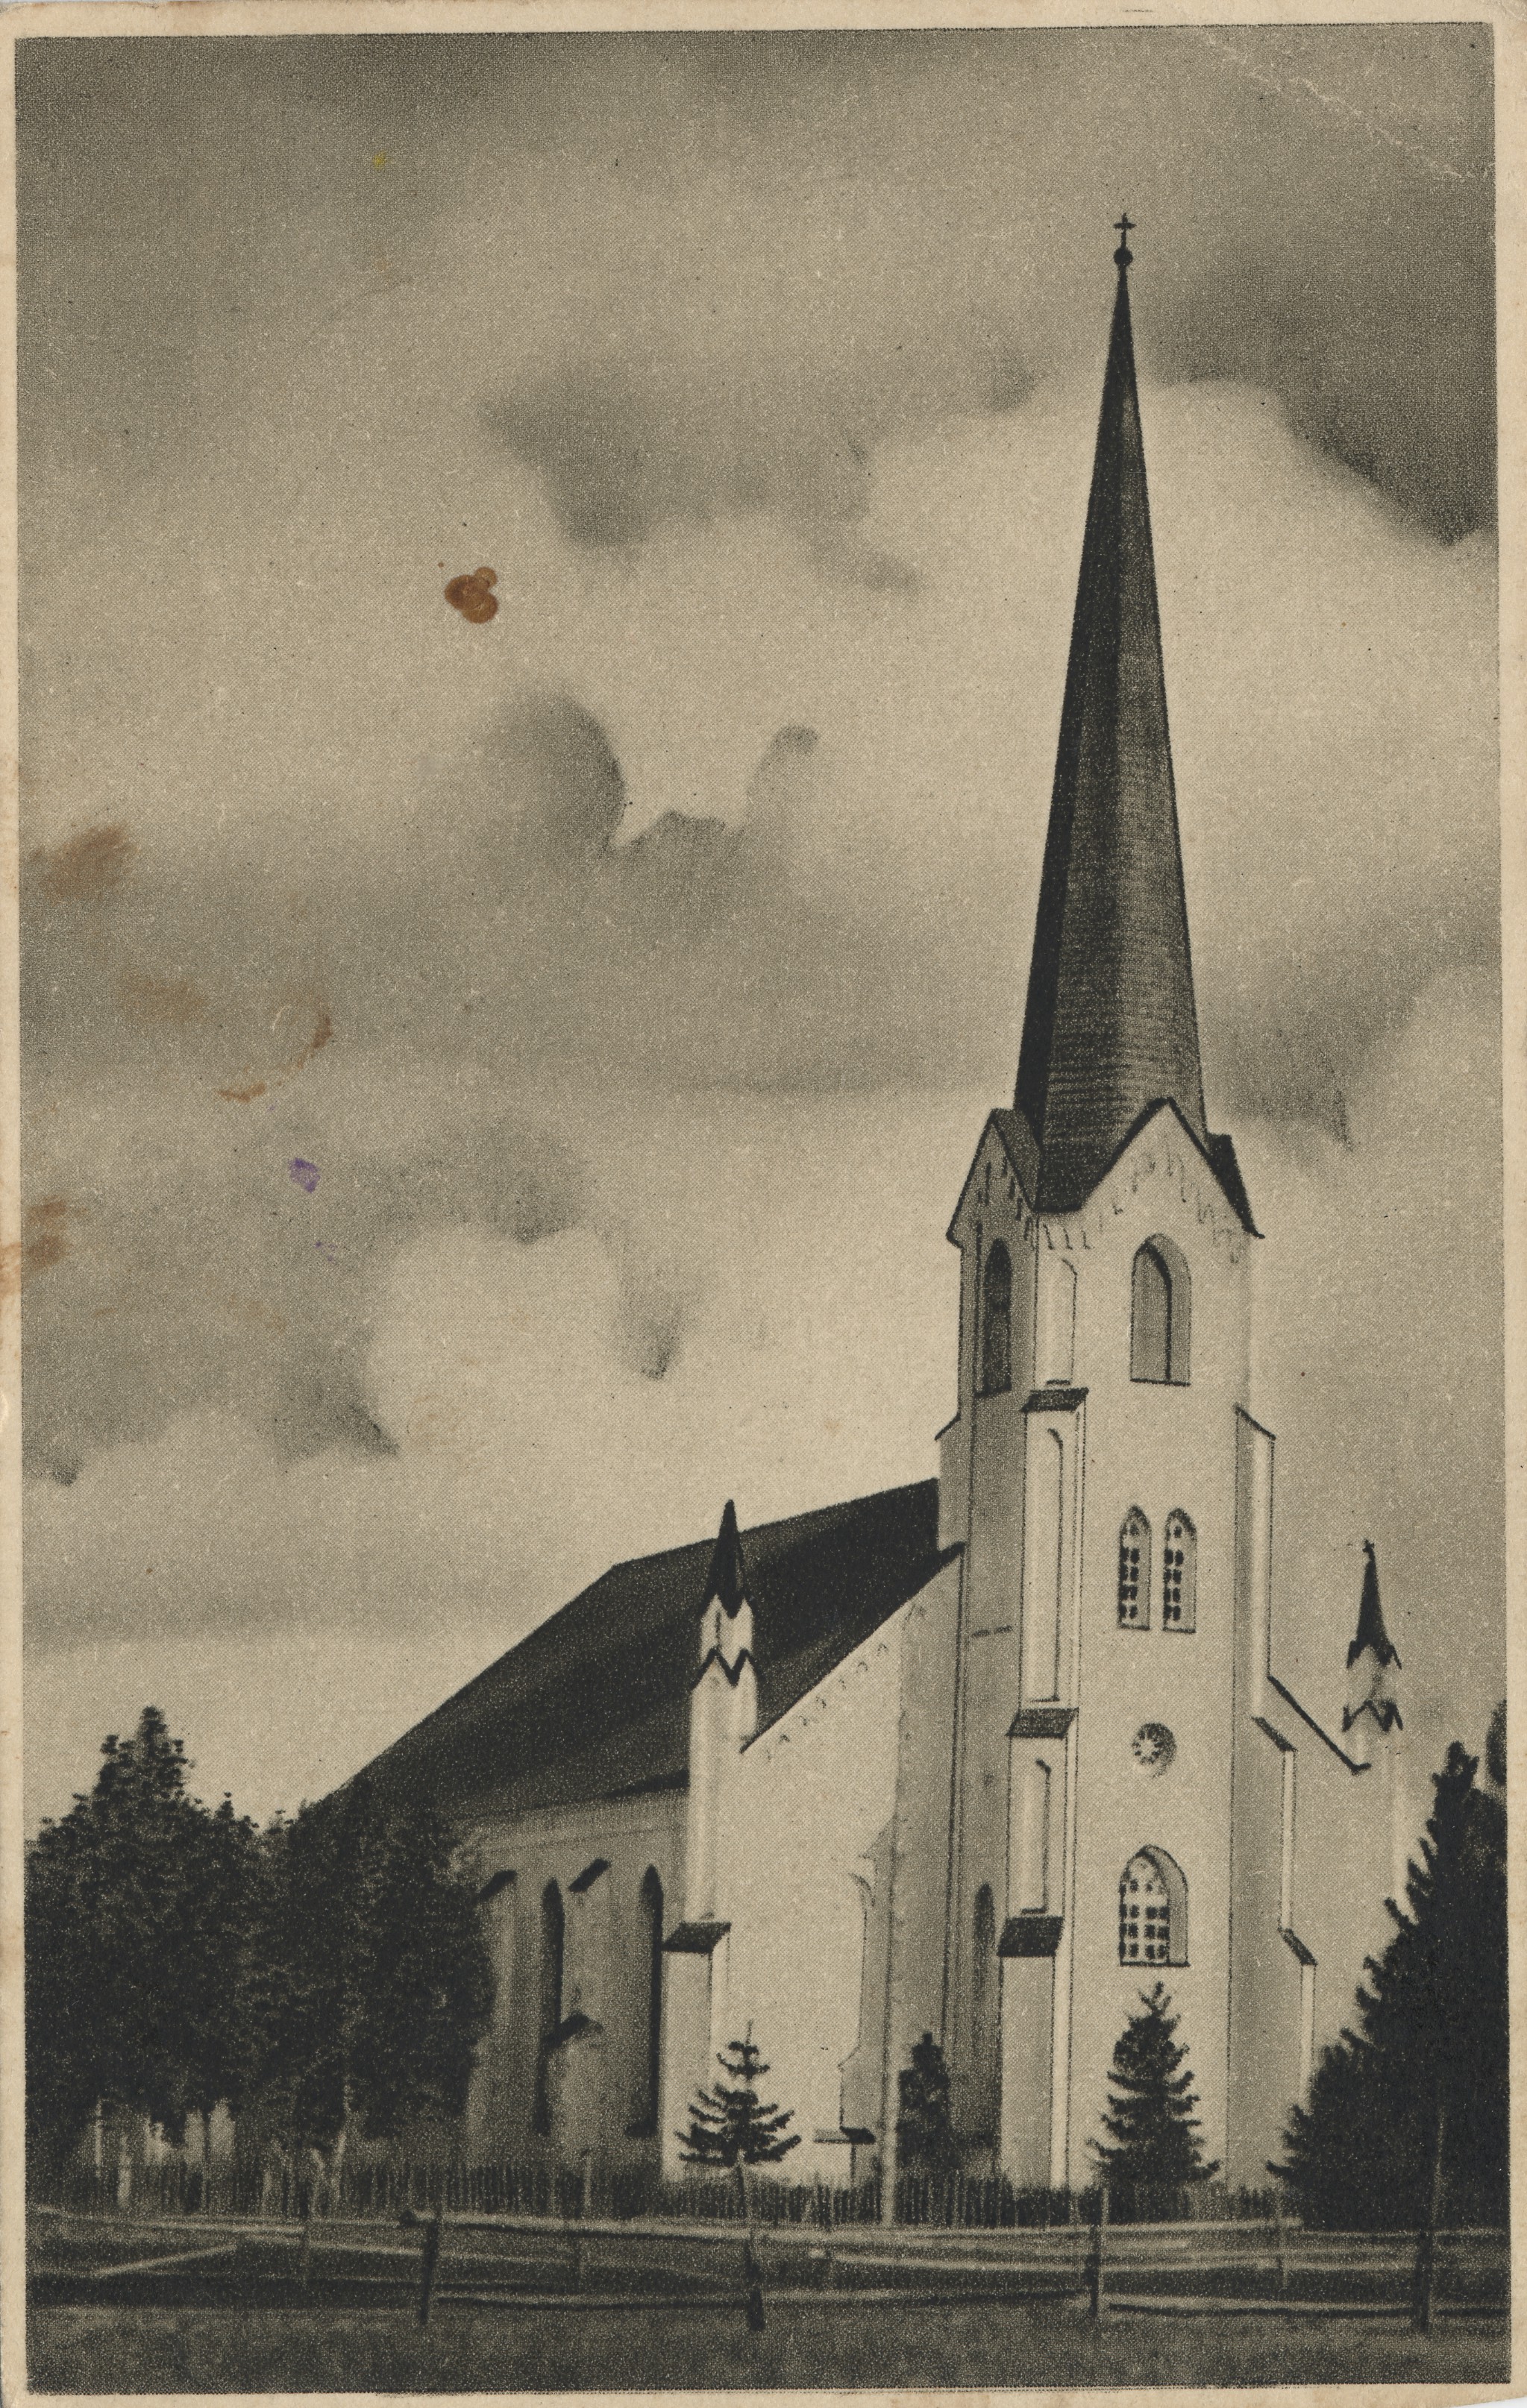 Lohusuu church